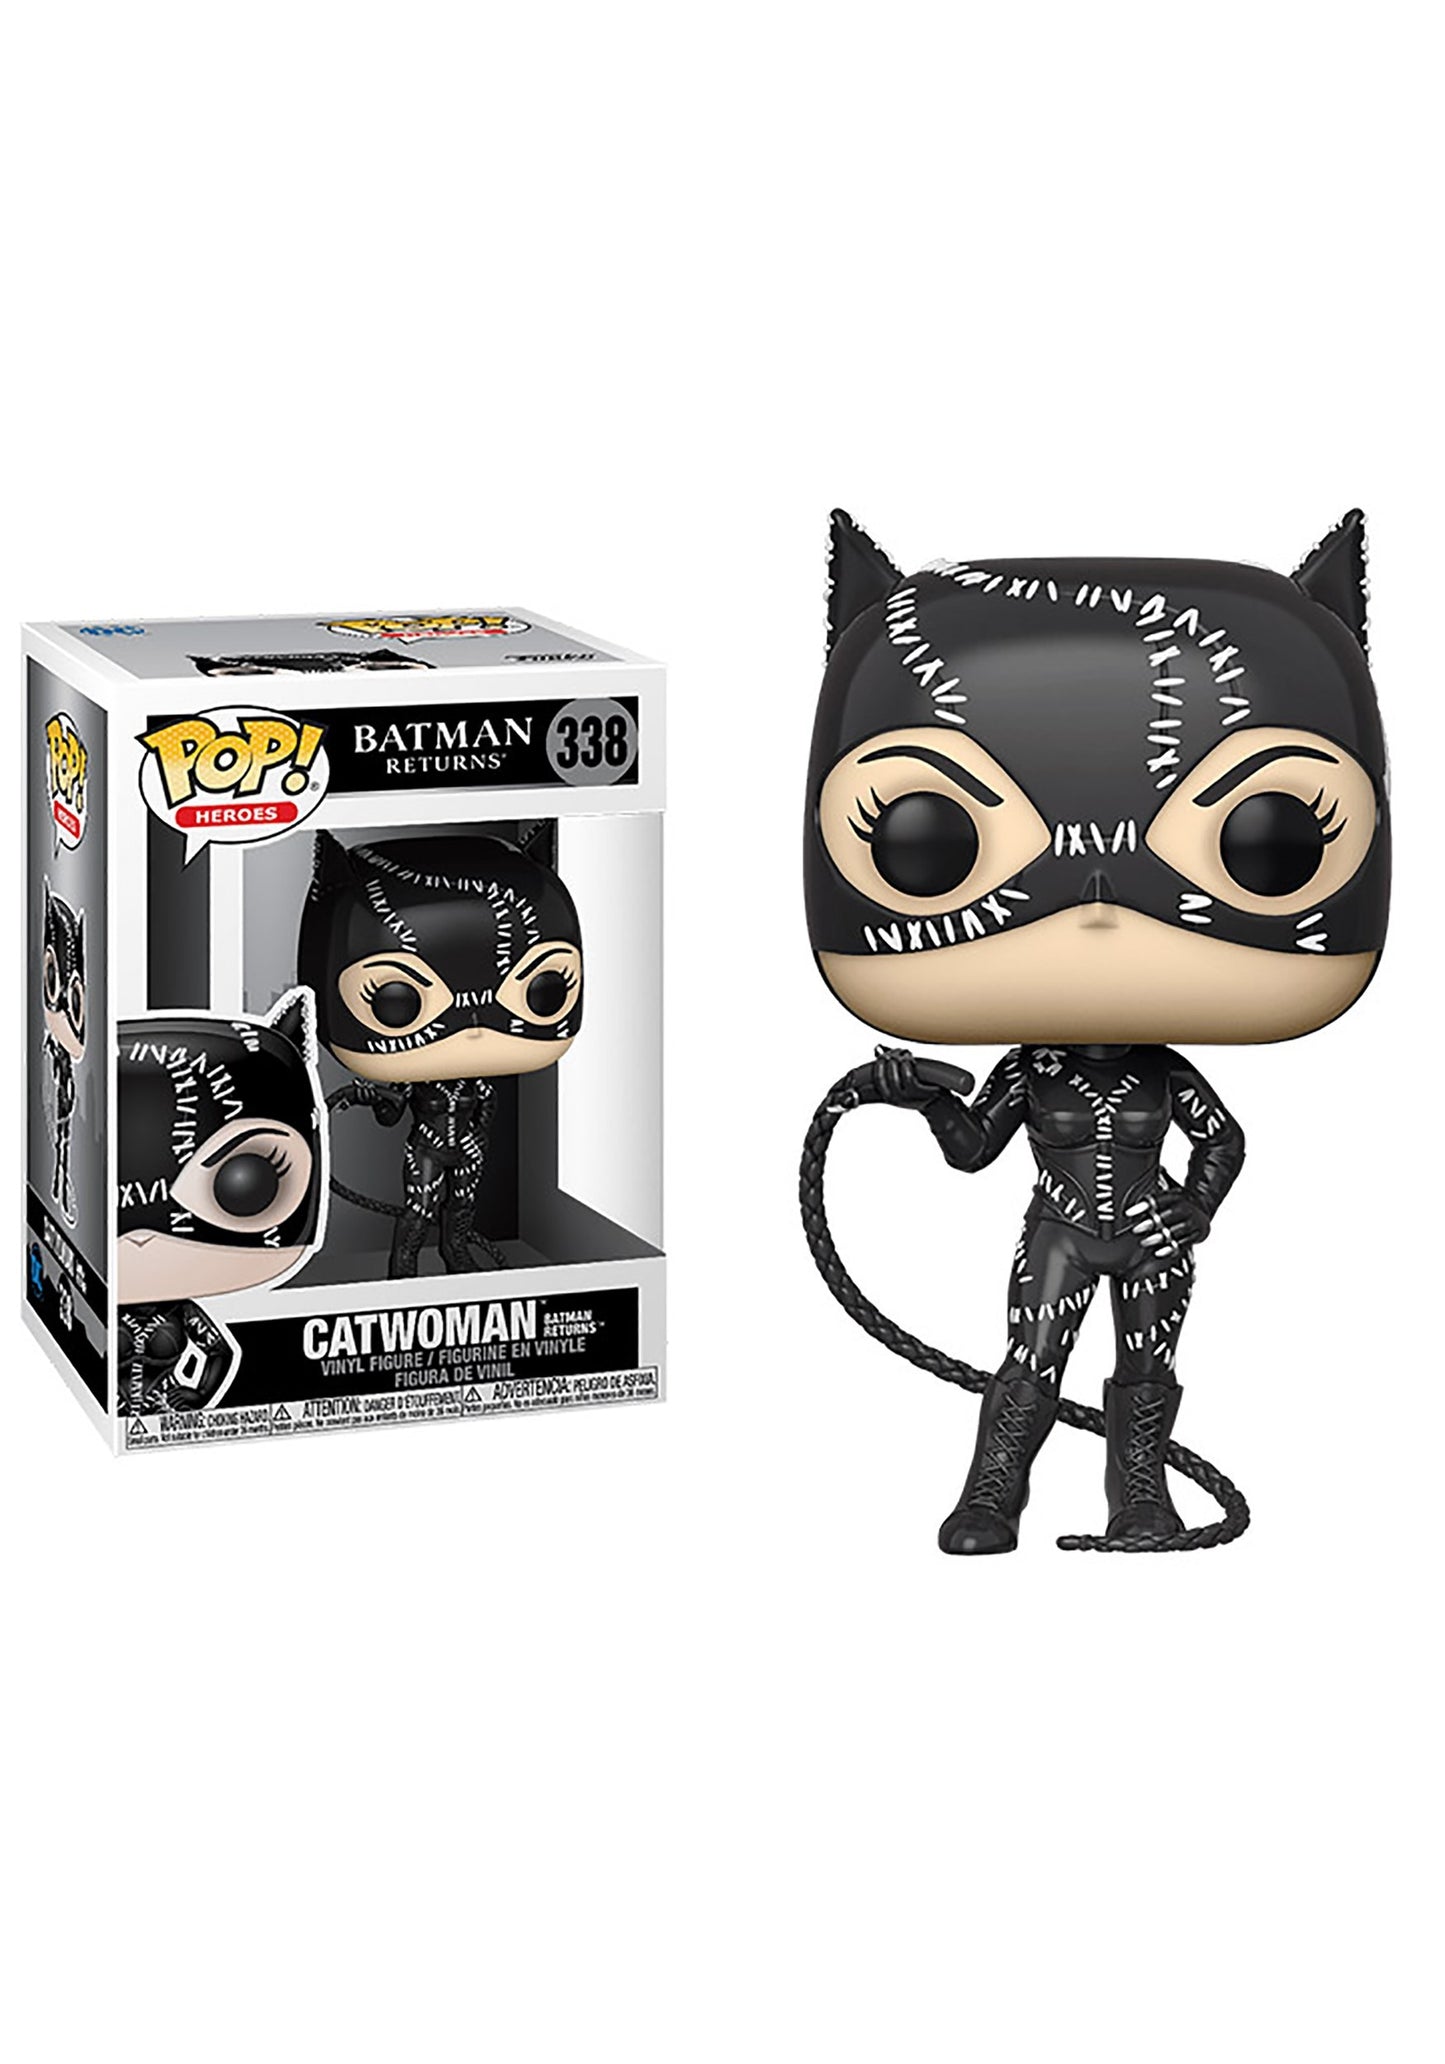 Catwoman Batman Returns POP Figure DC Comics